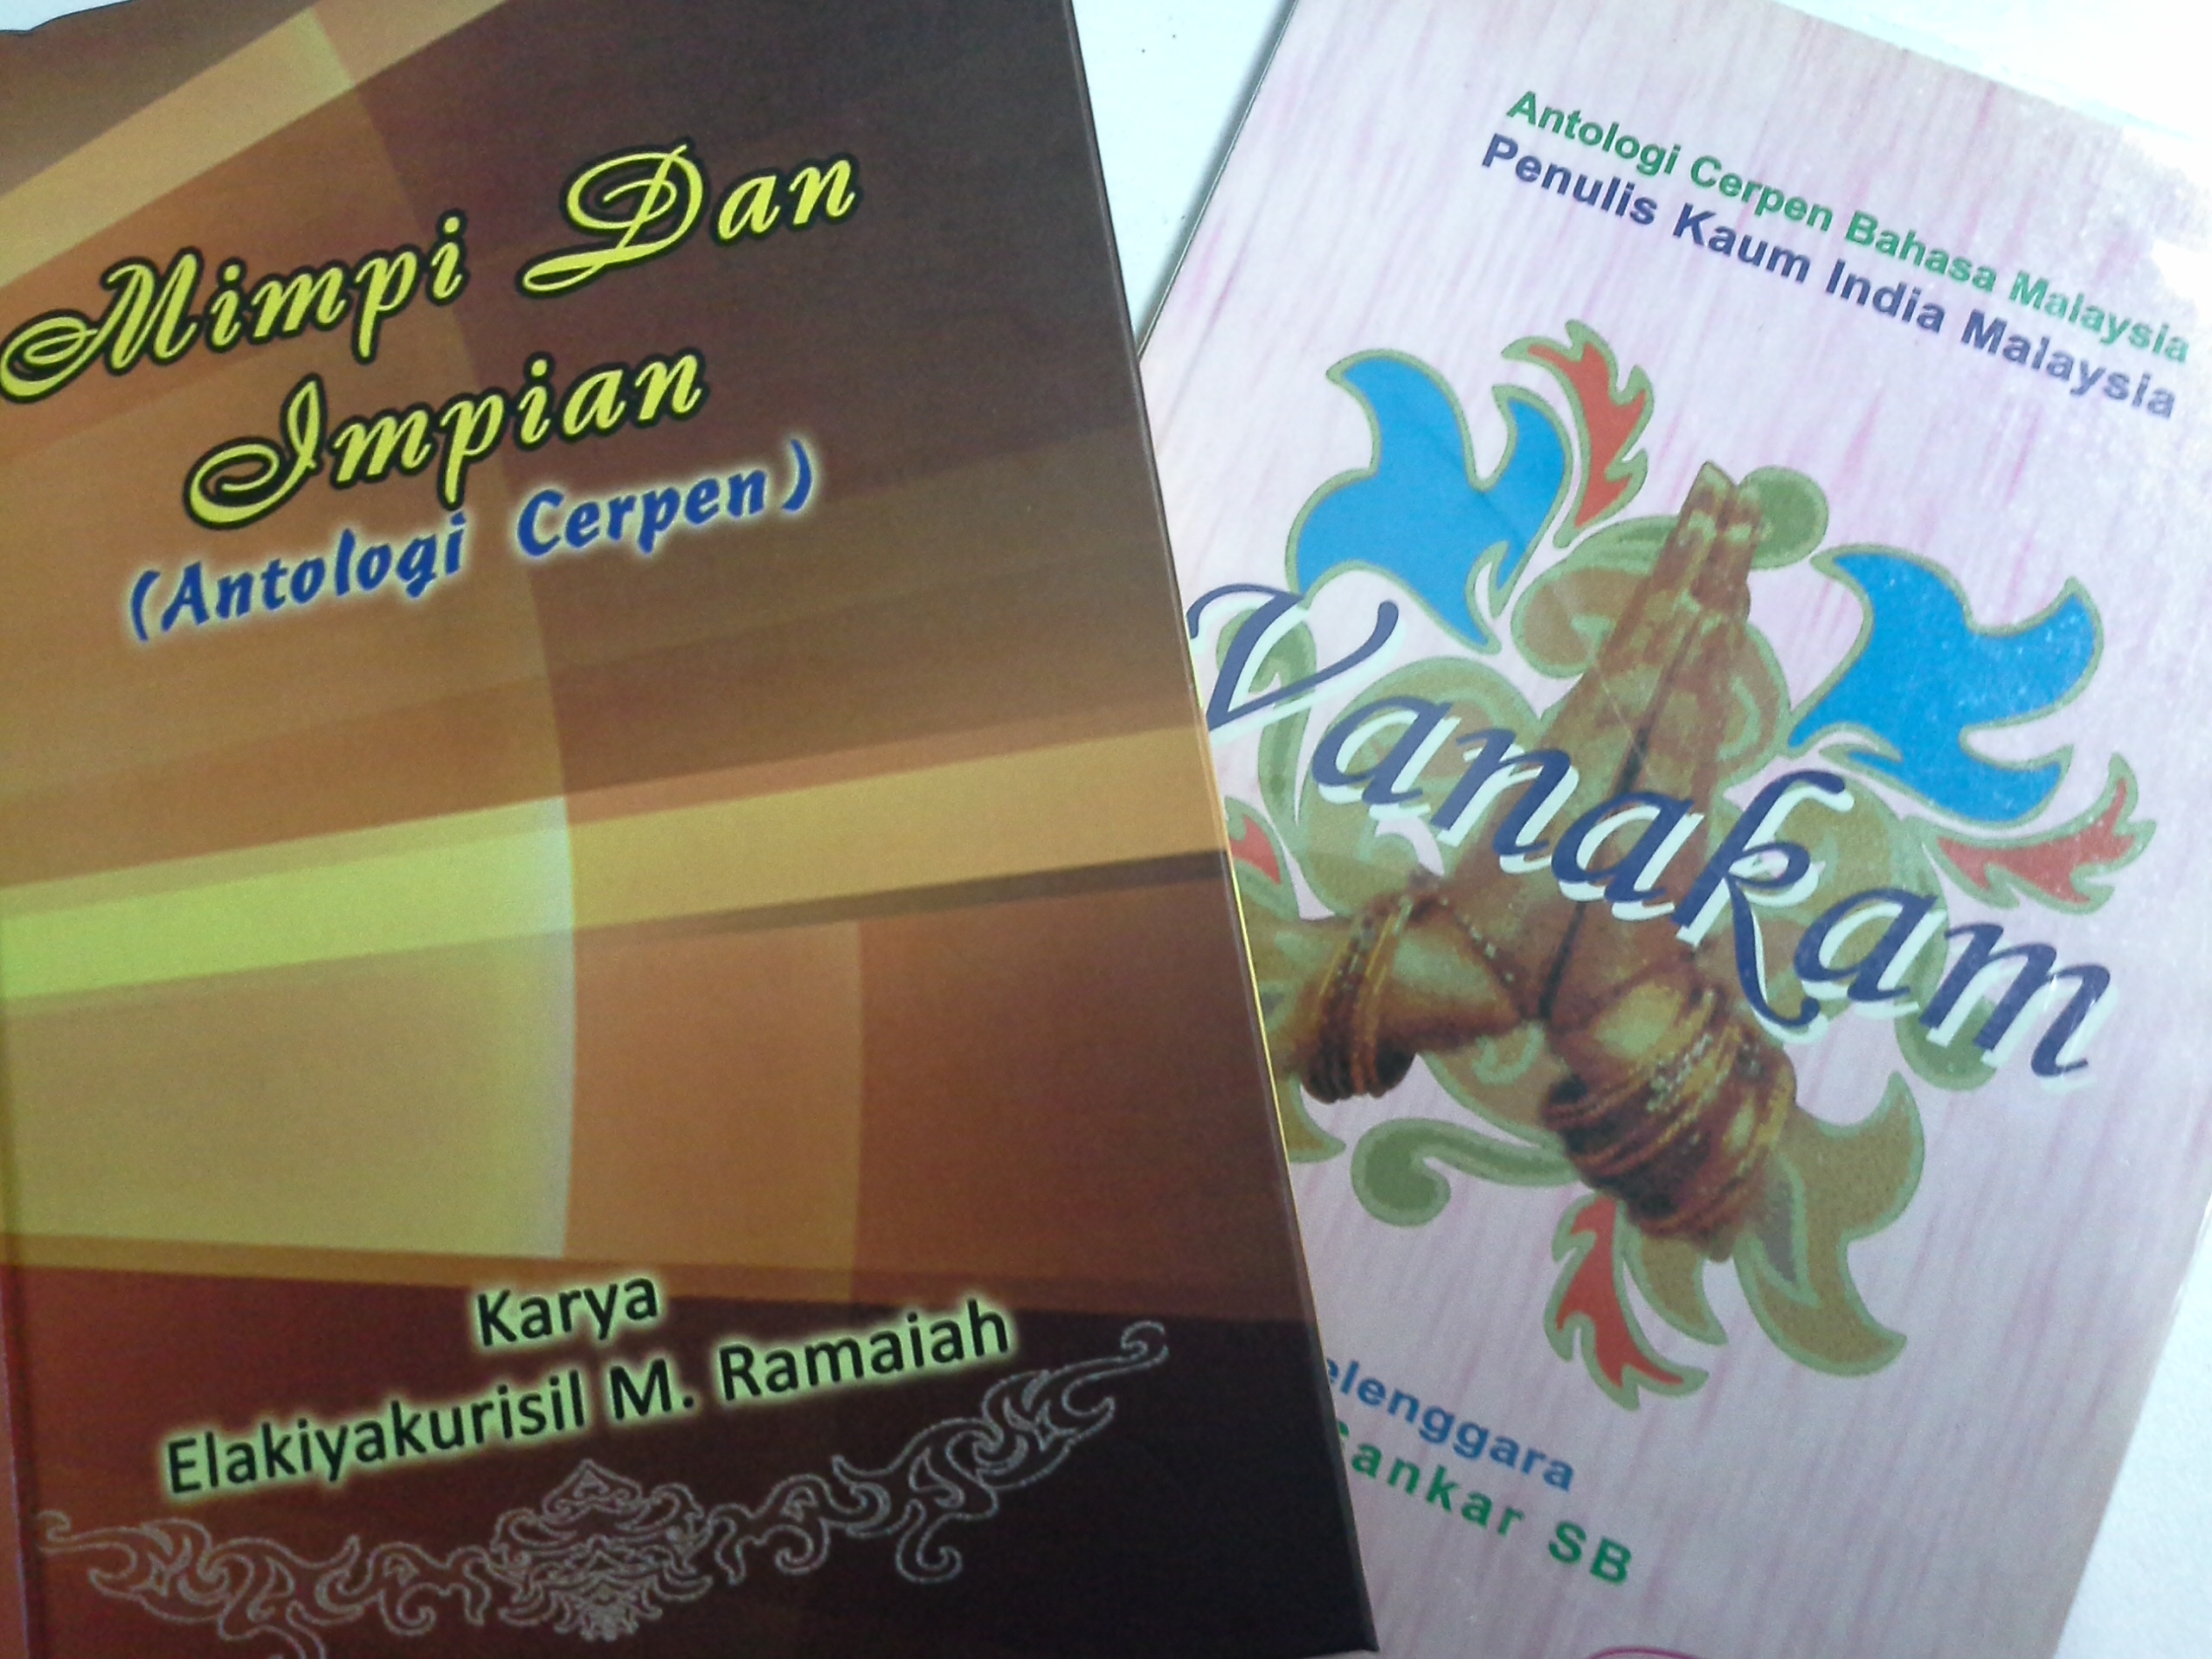 Vanakam, karya Tamil yang diterjemah perlu setanding karya asli Bahasa Malaysia.